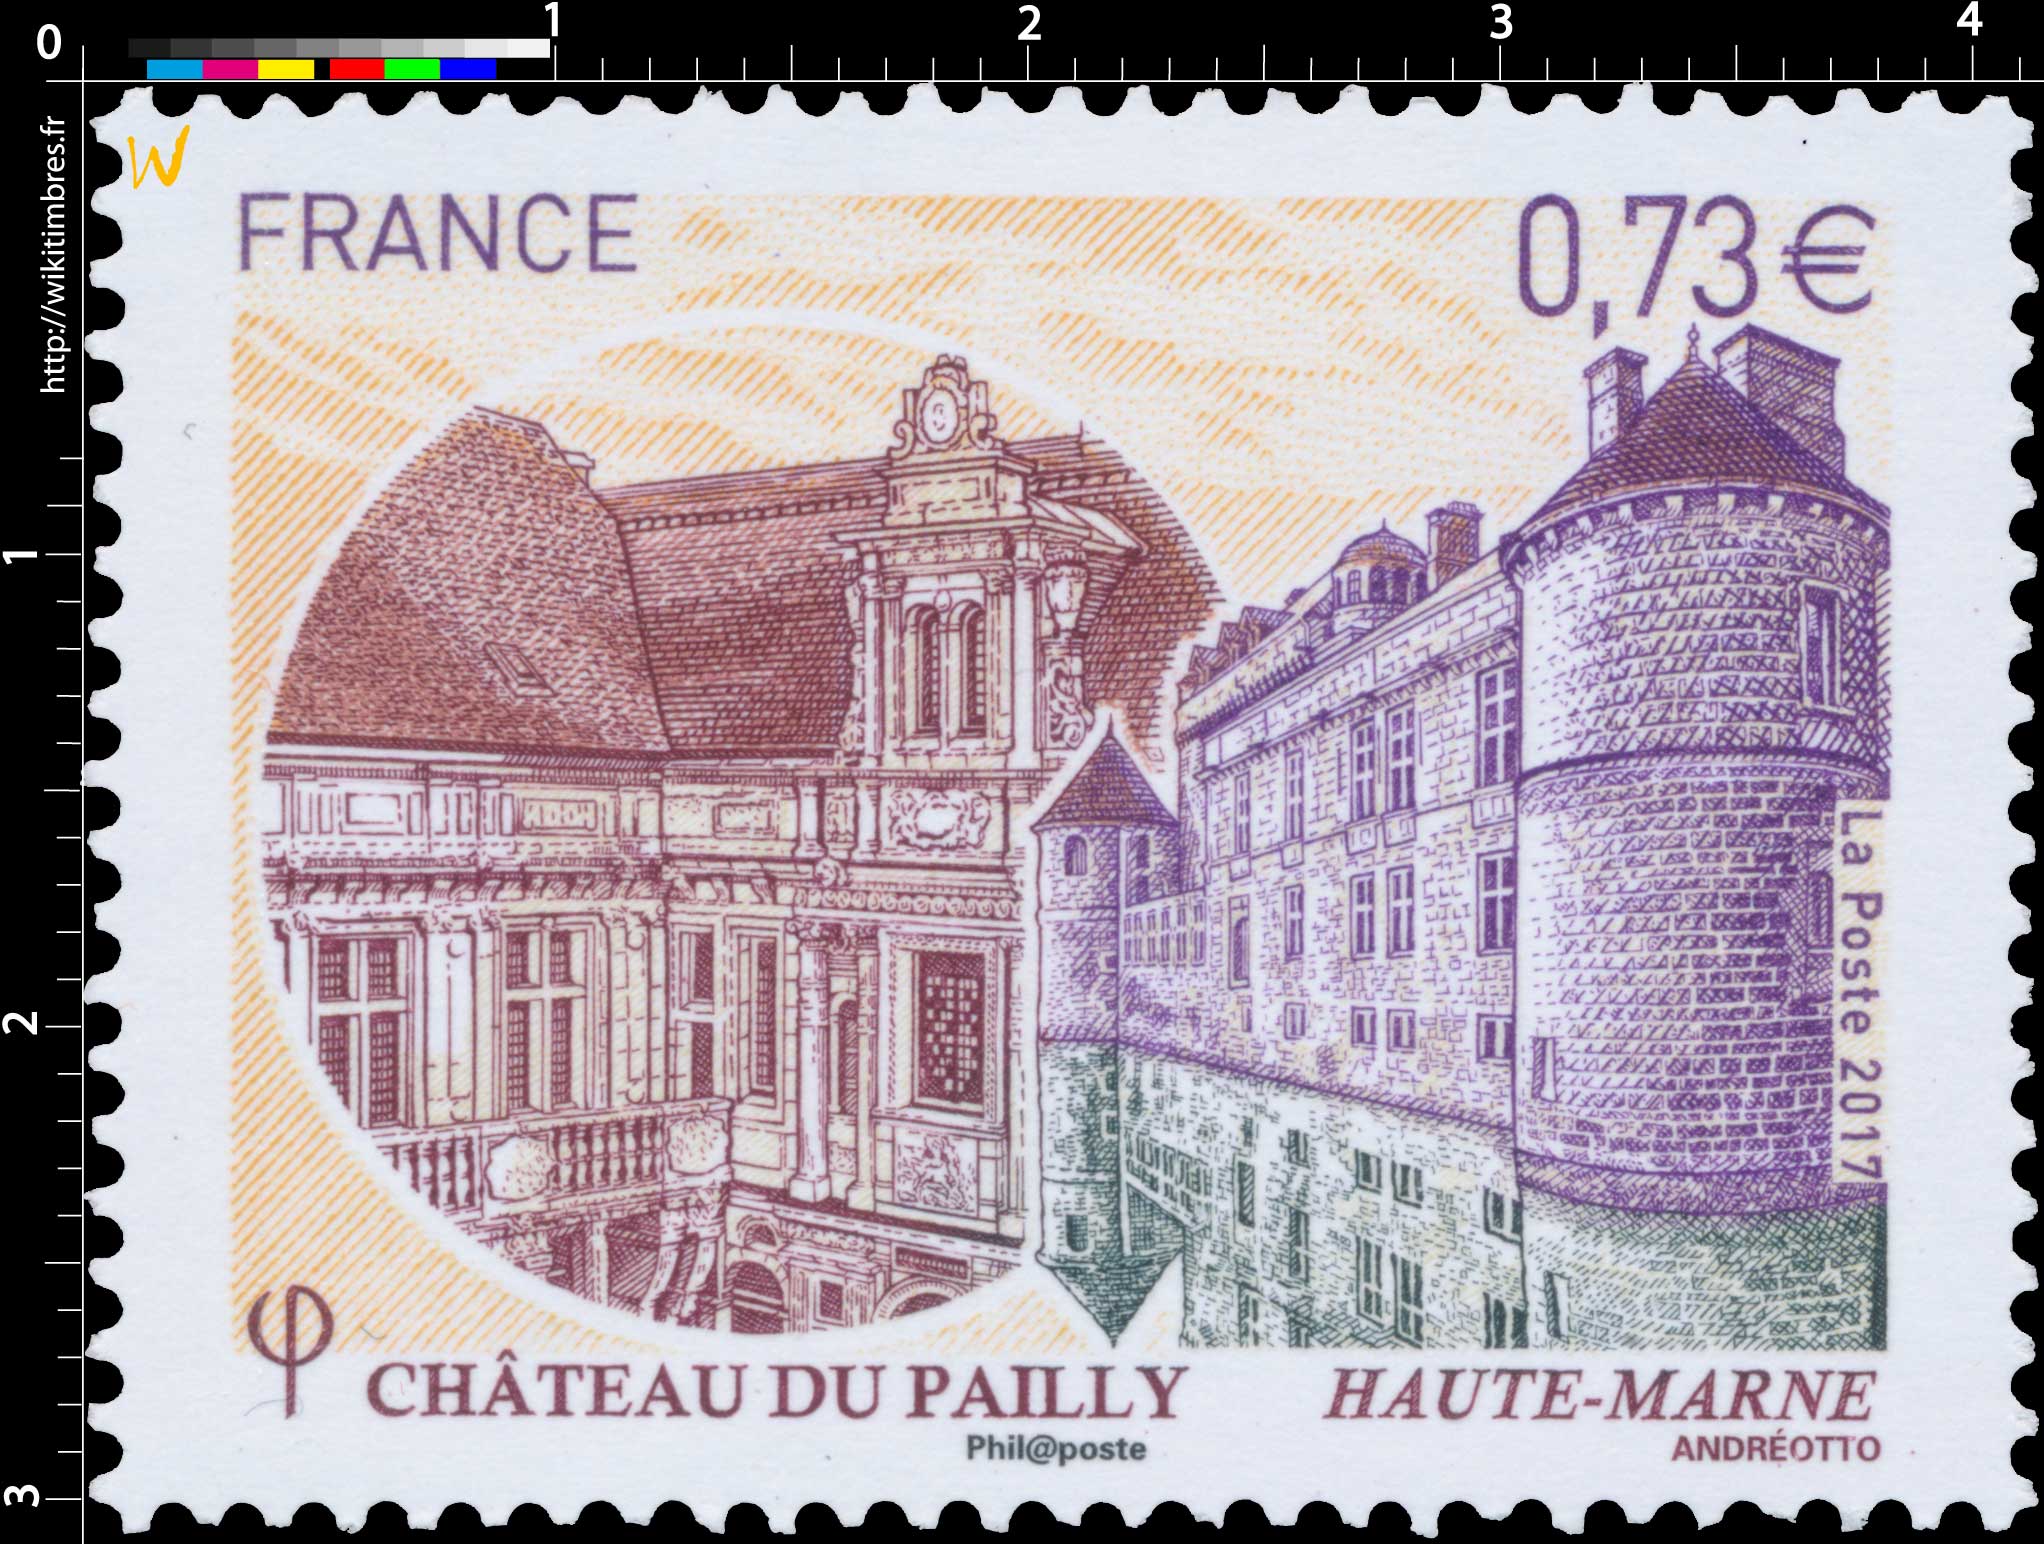 2017 Château du Pailly Haute-Marne